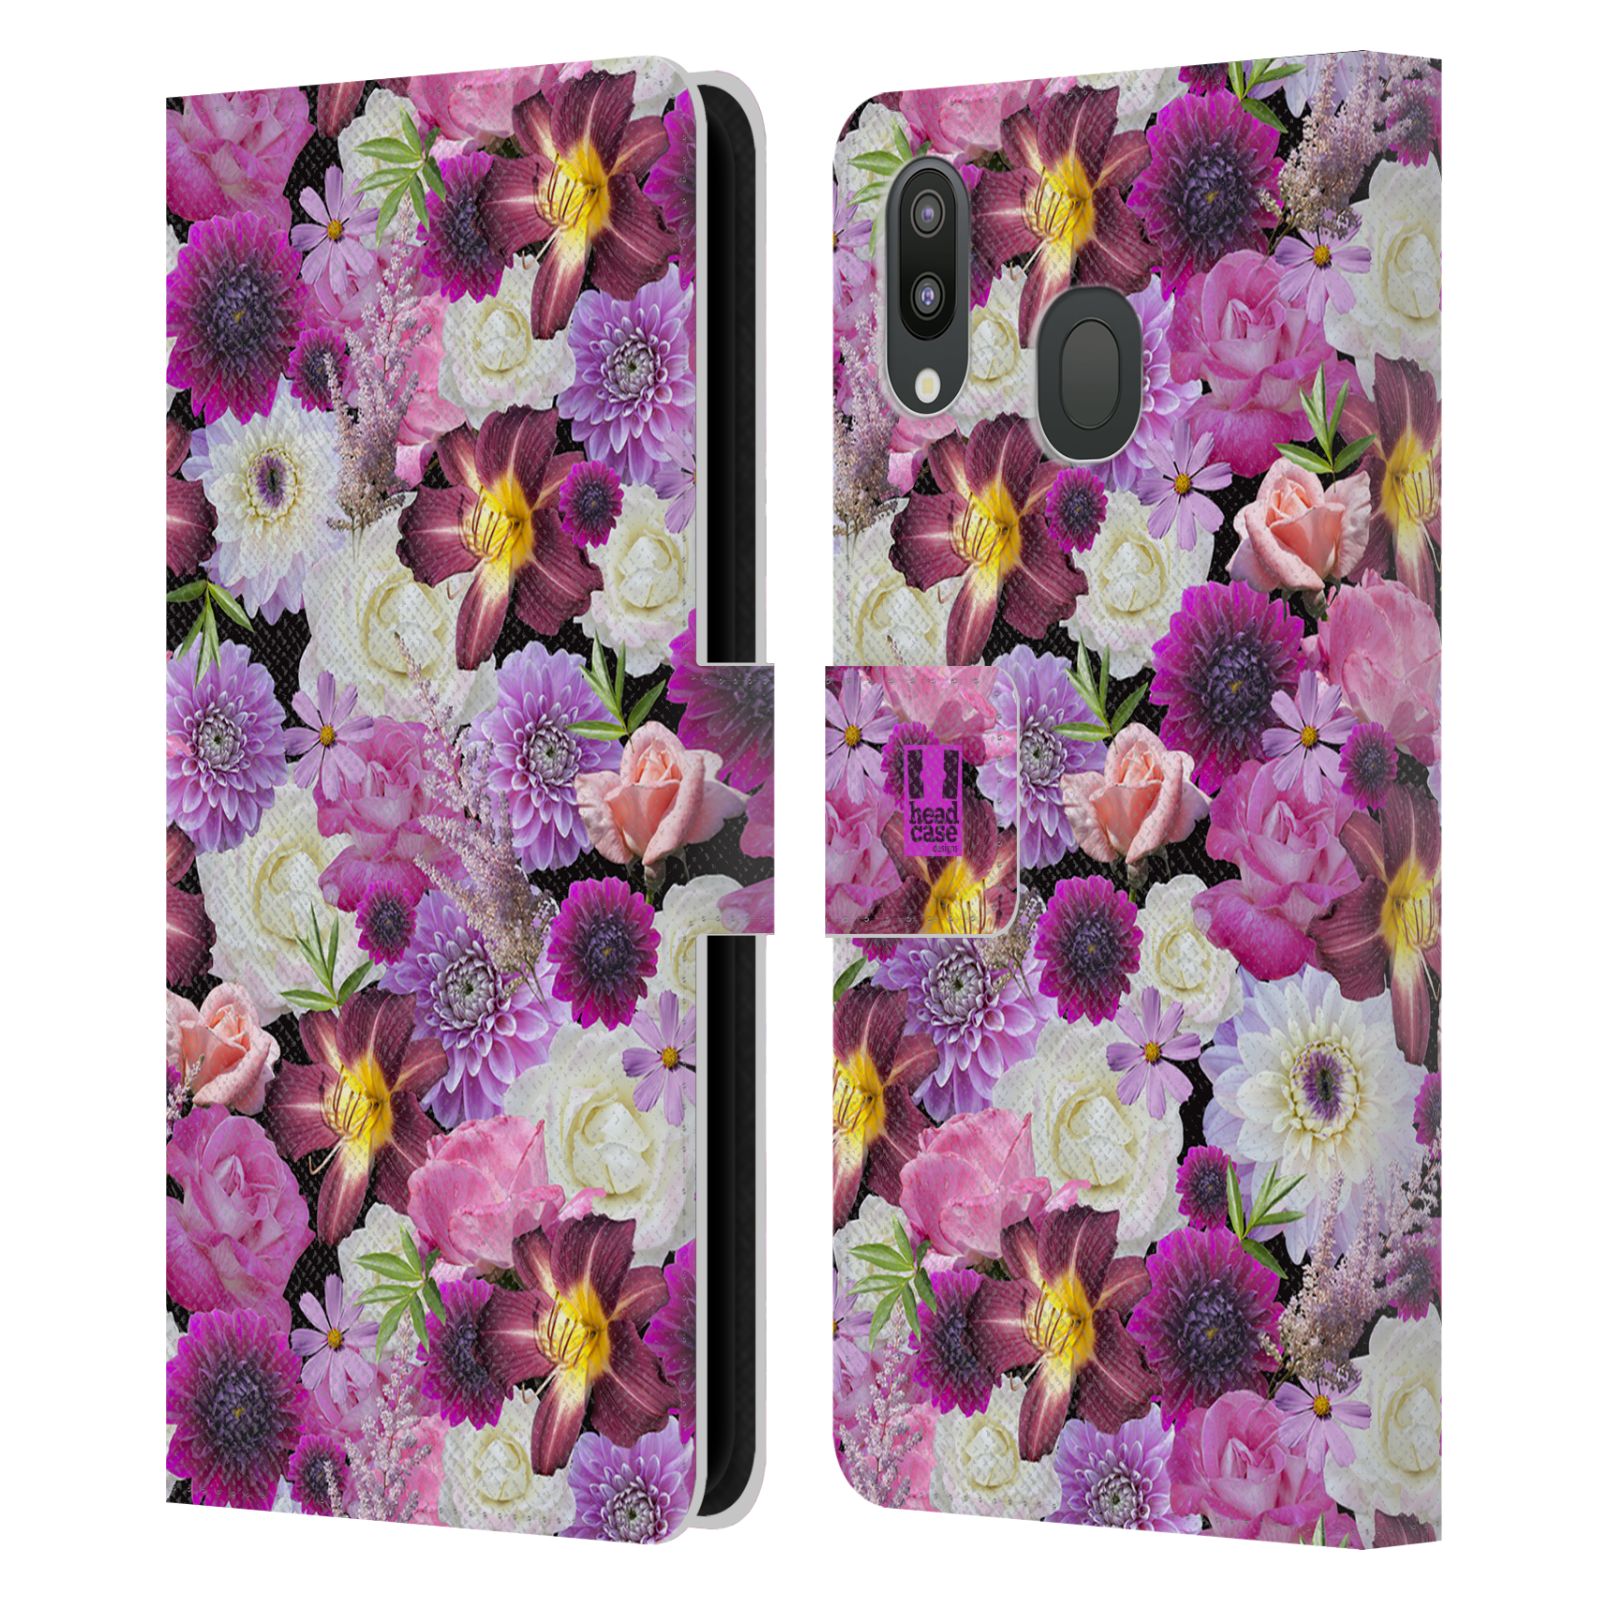 Pouzdro na mobil Samsung Galaxy M20 květy foto fialová a bílá